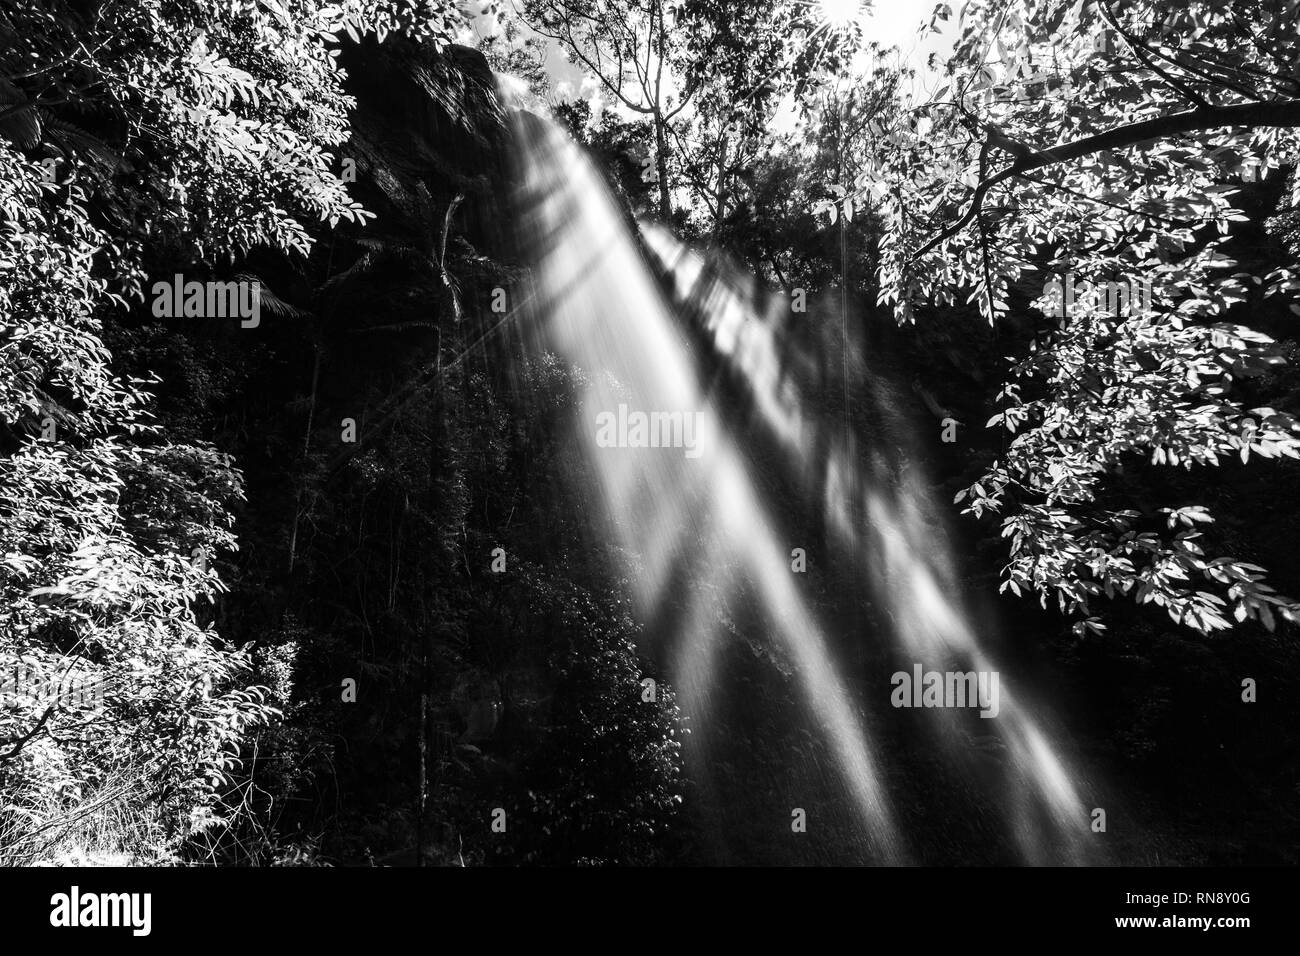 Incredibile cascata di foresta di balneazione in luce del sole - immagine in bianco e nero Foto Stock